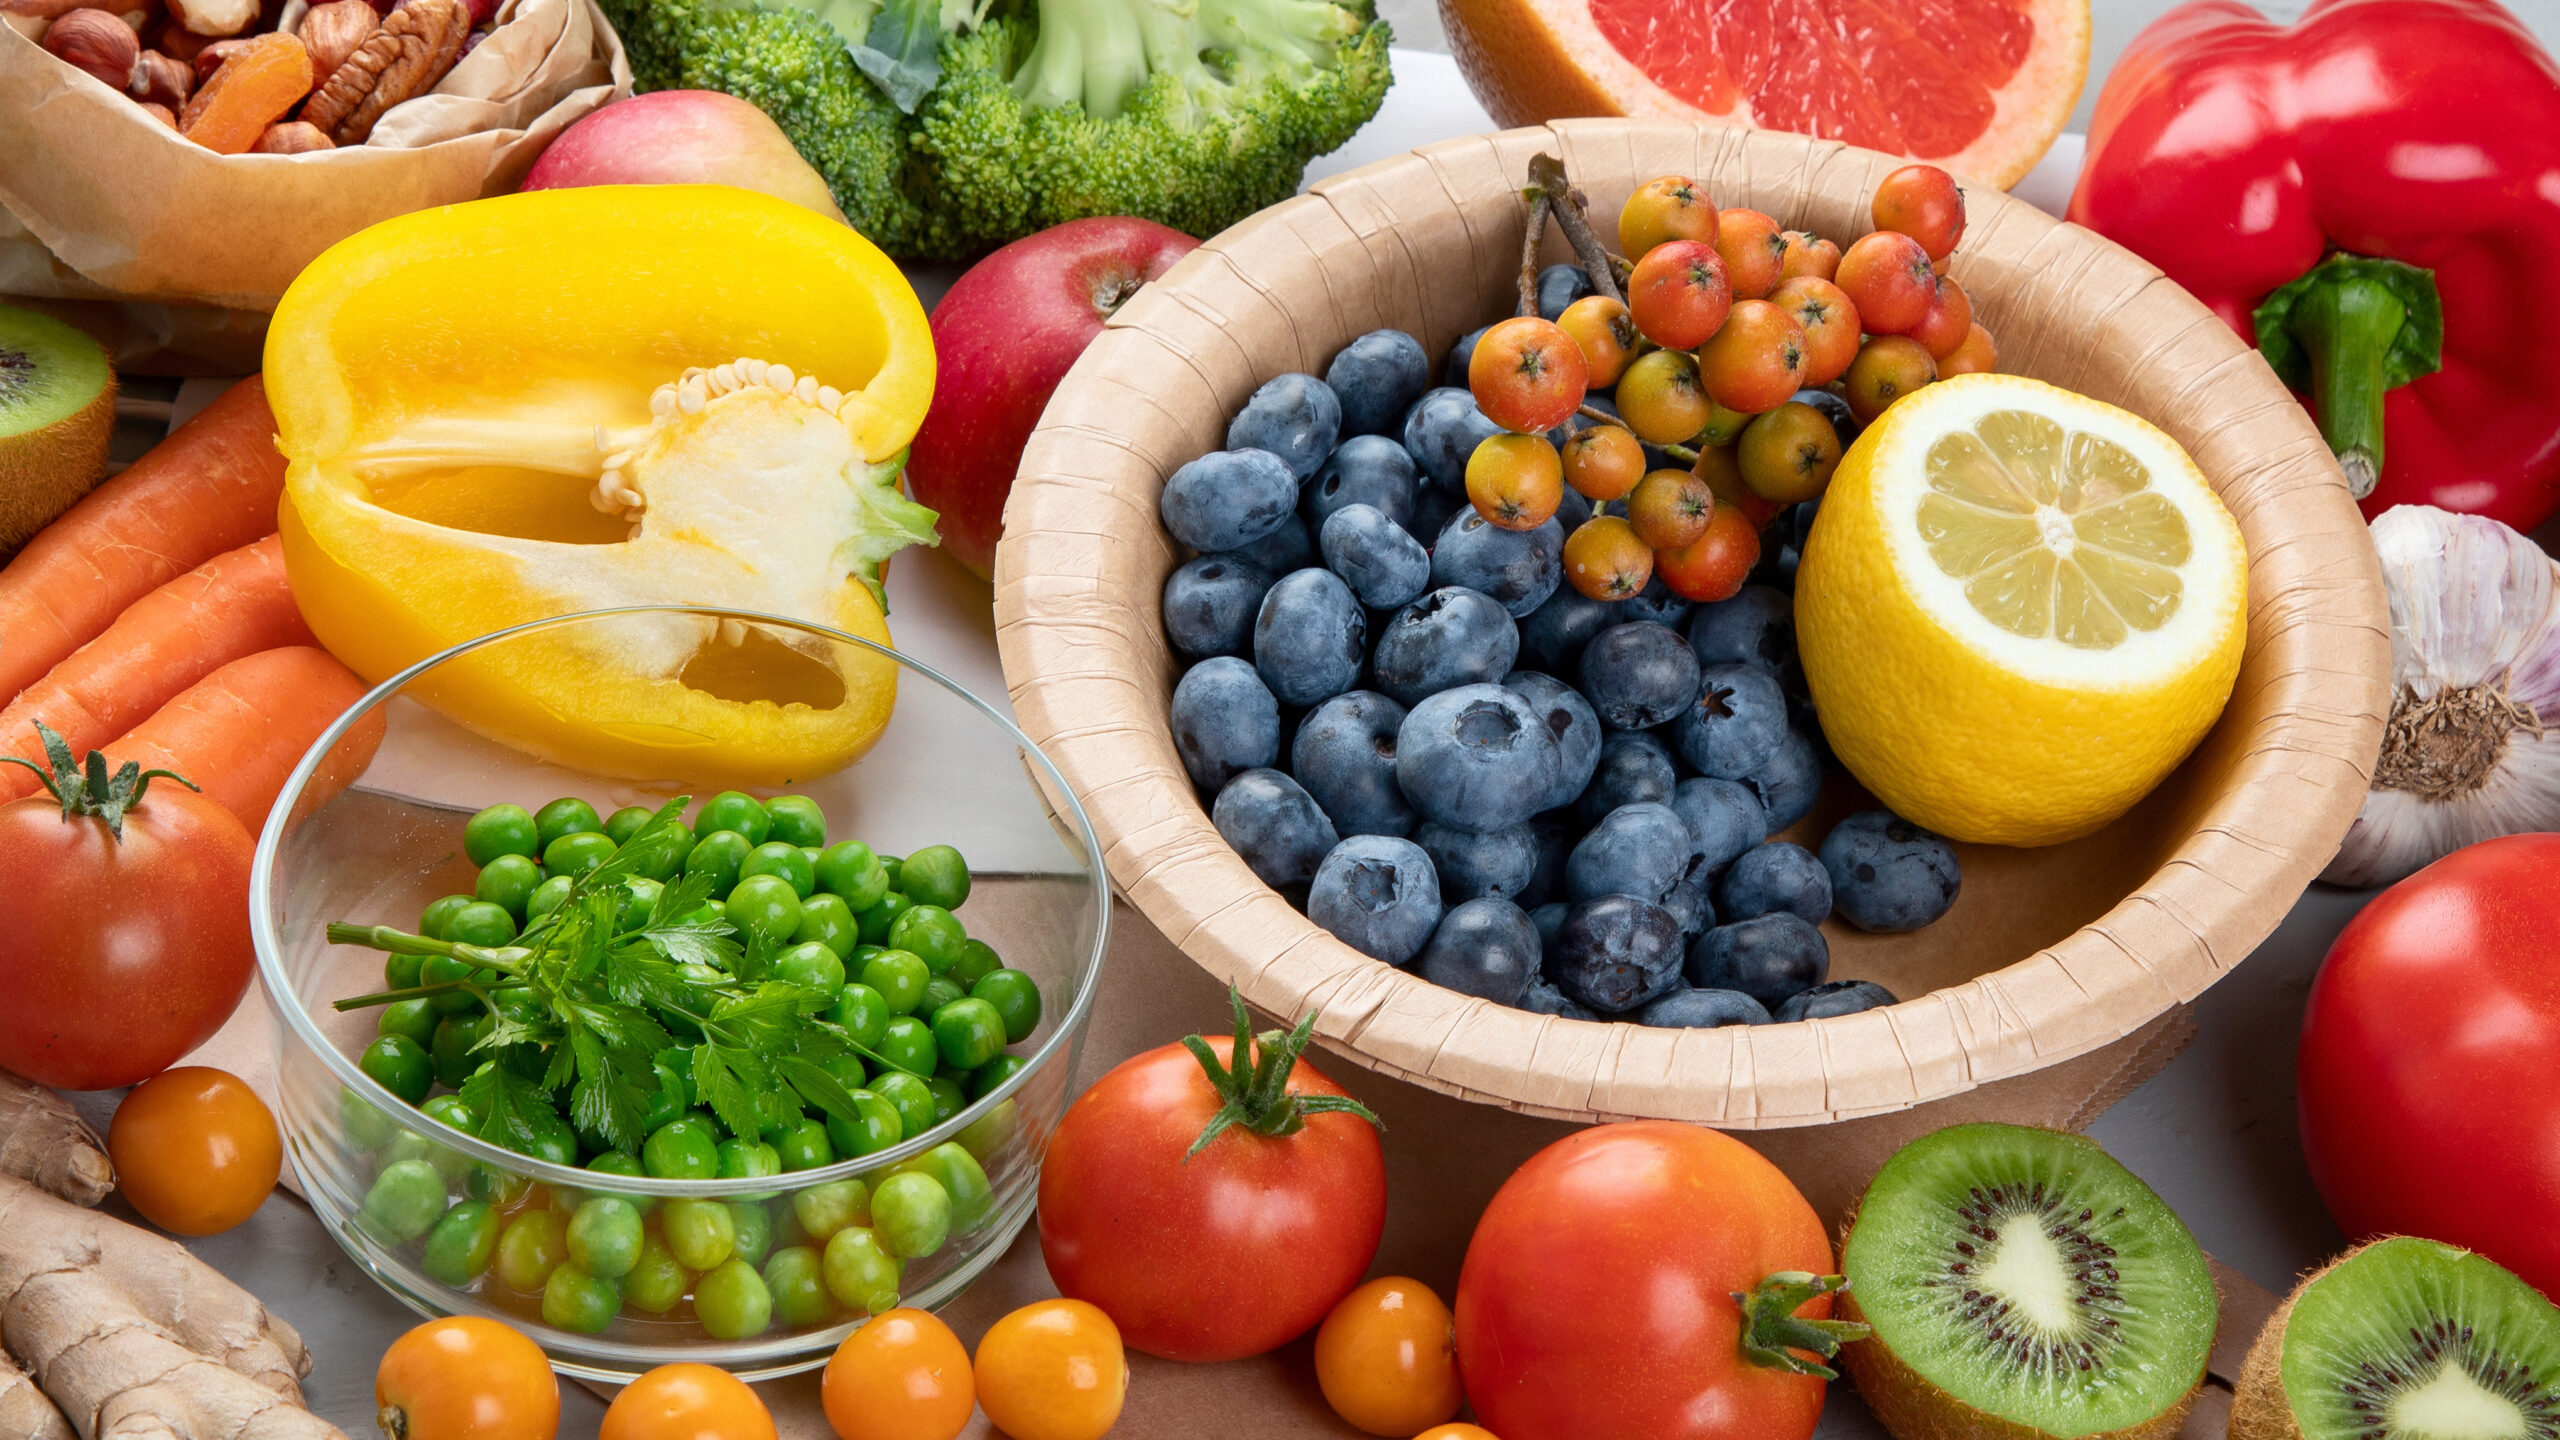 Загадки про фрукты, овощи и ягоды